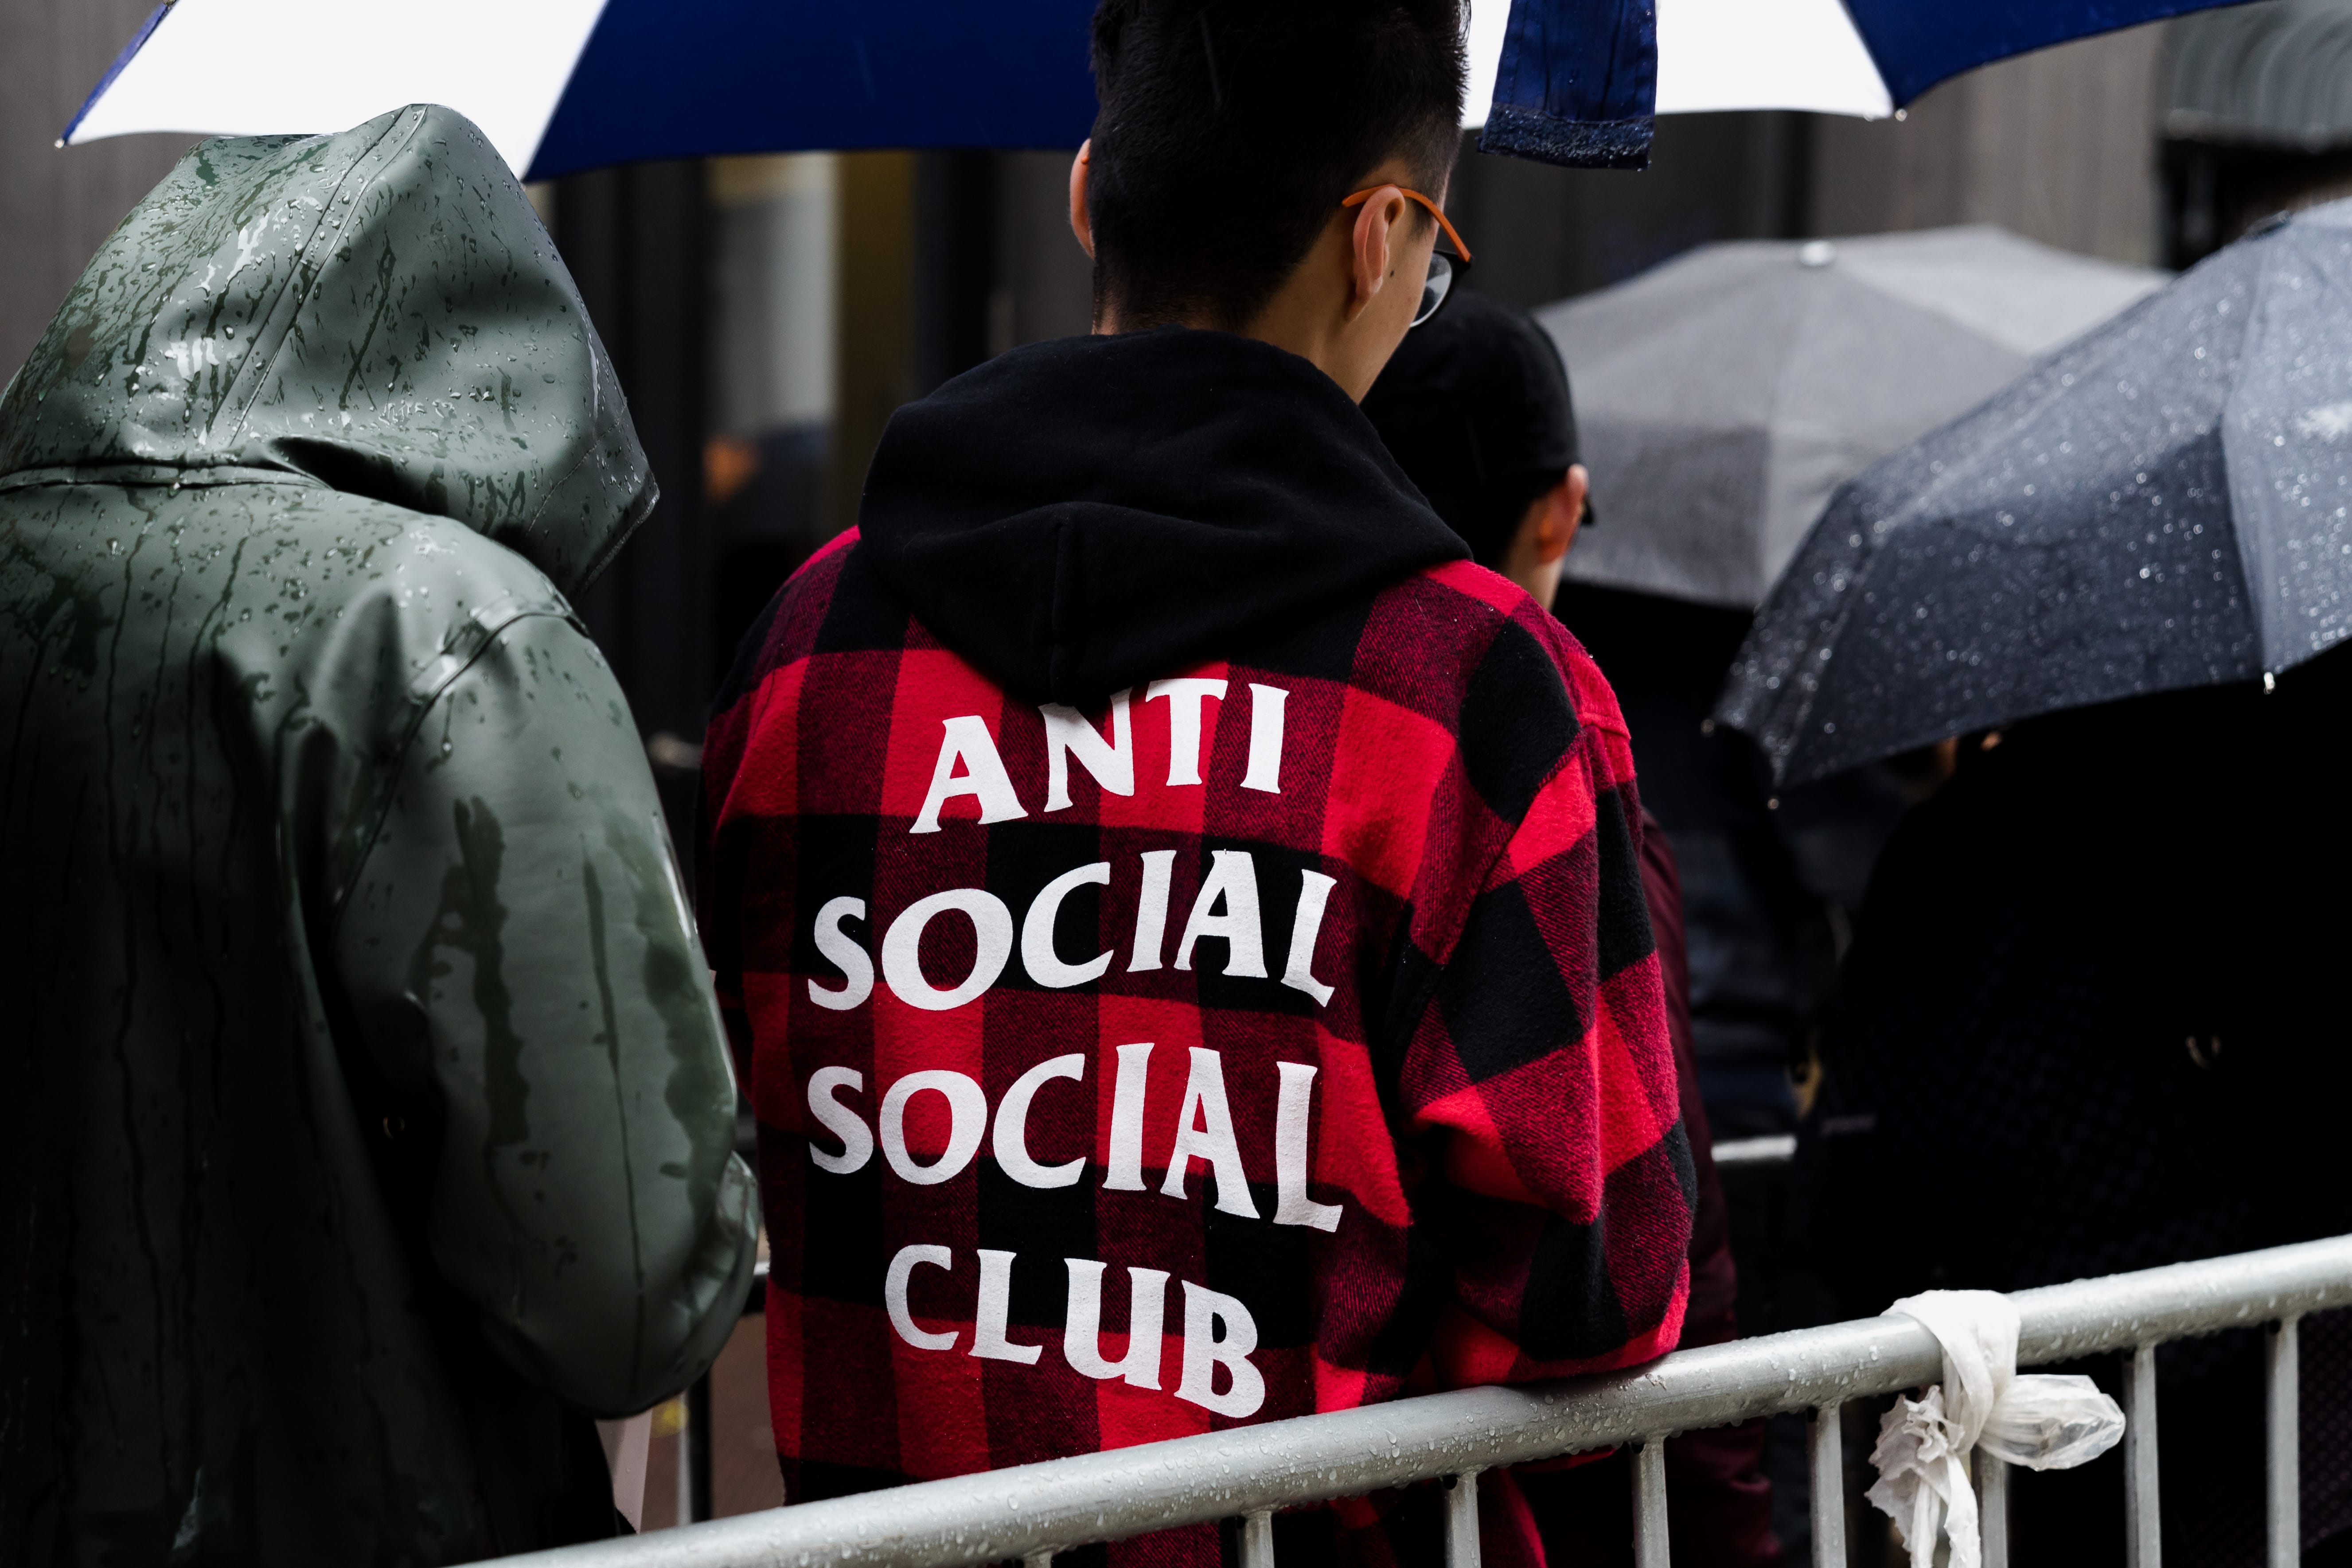 anti social social club sweatshirt amazon